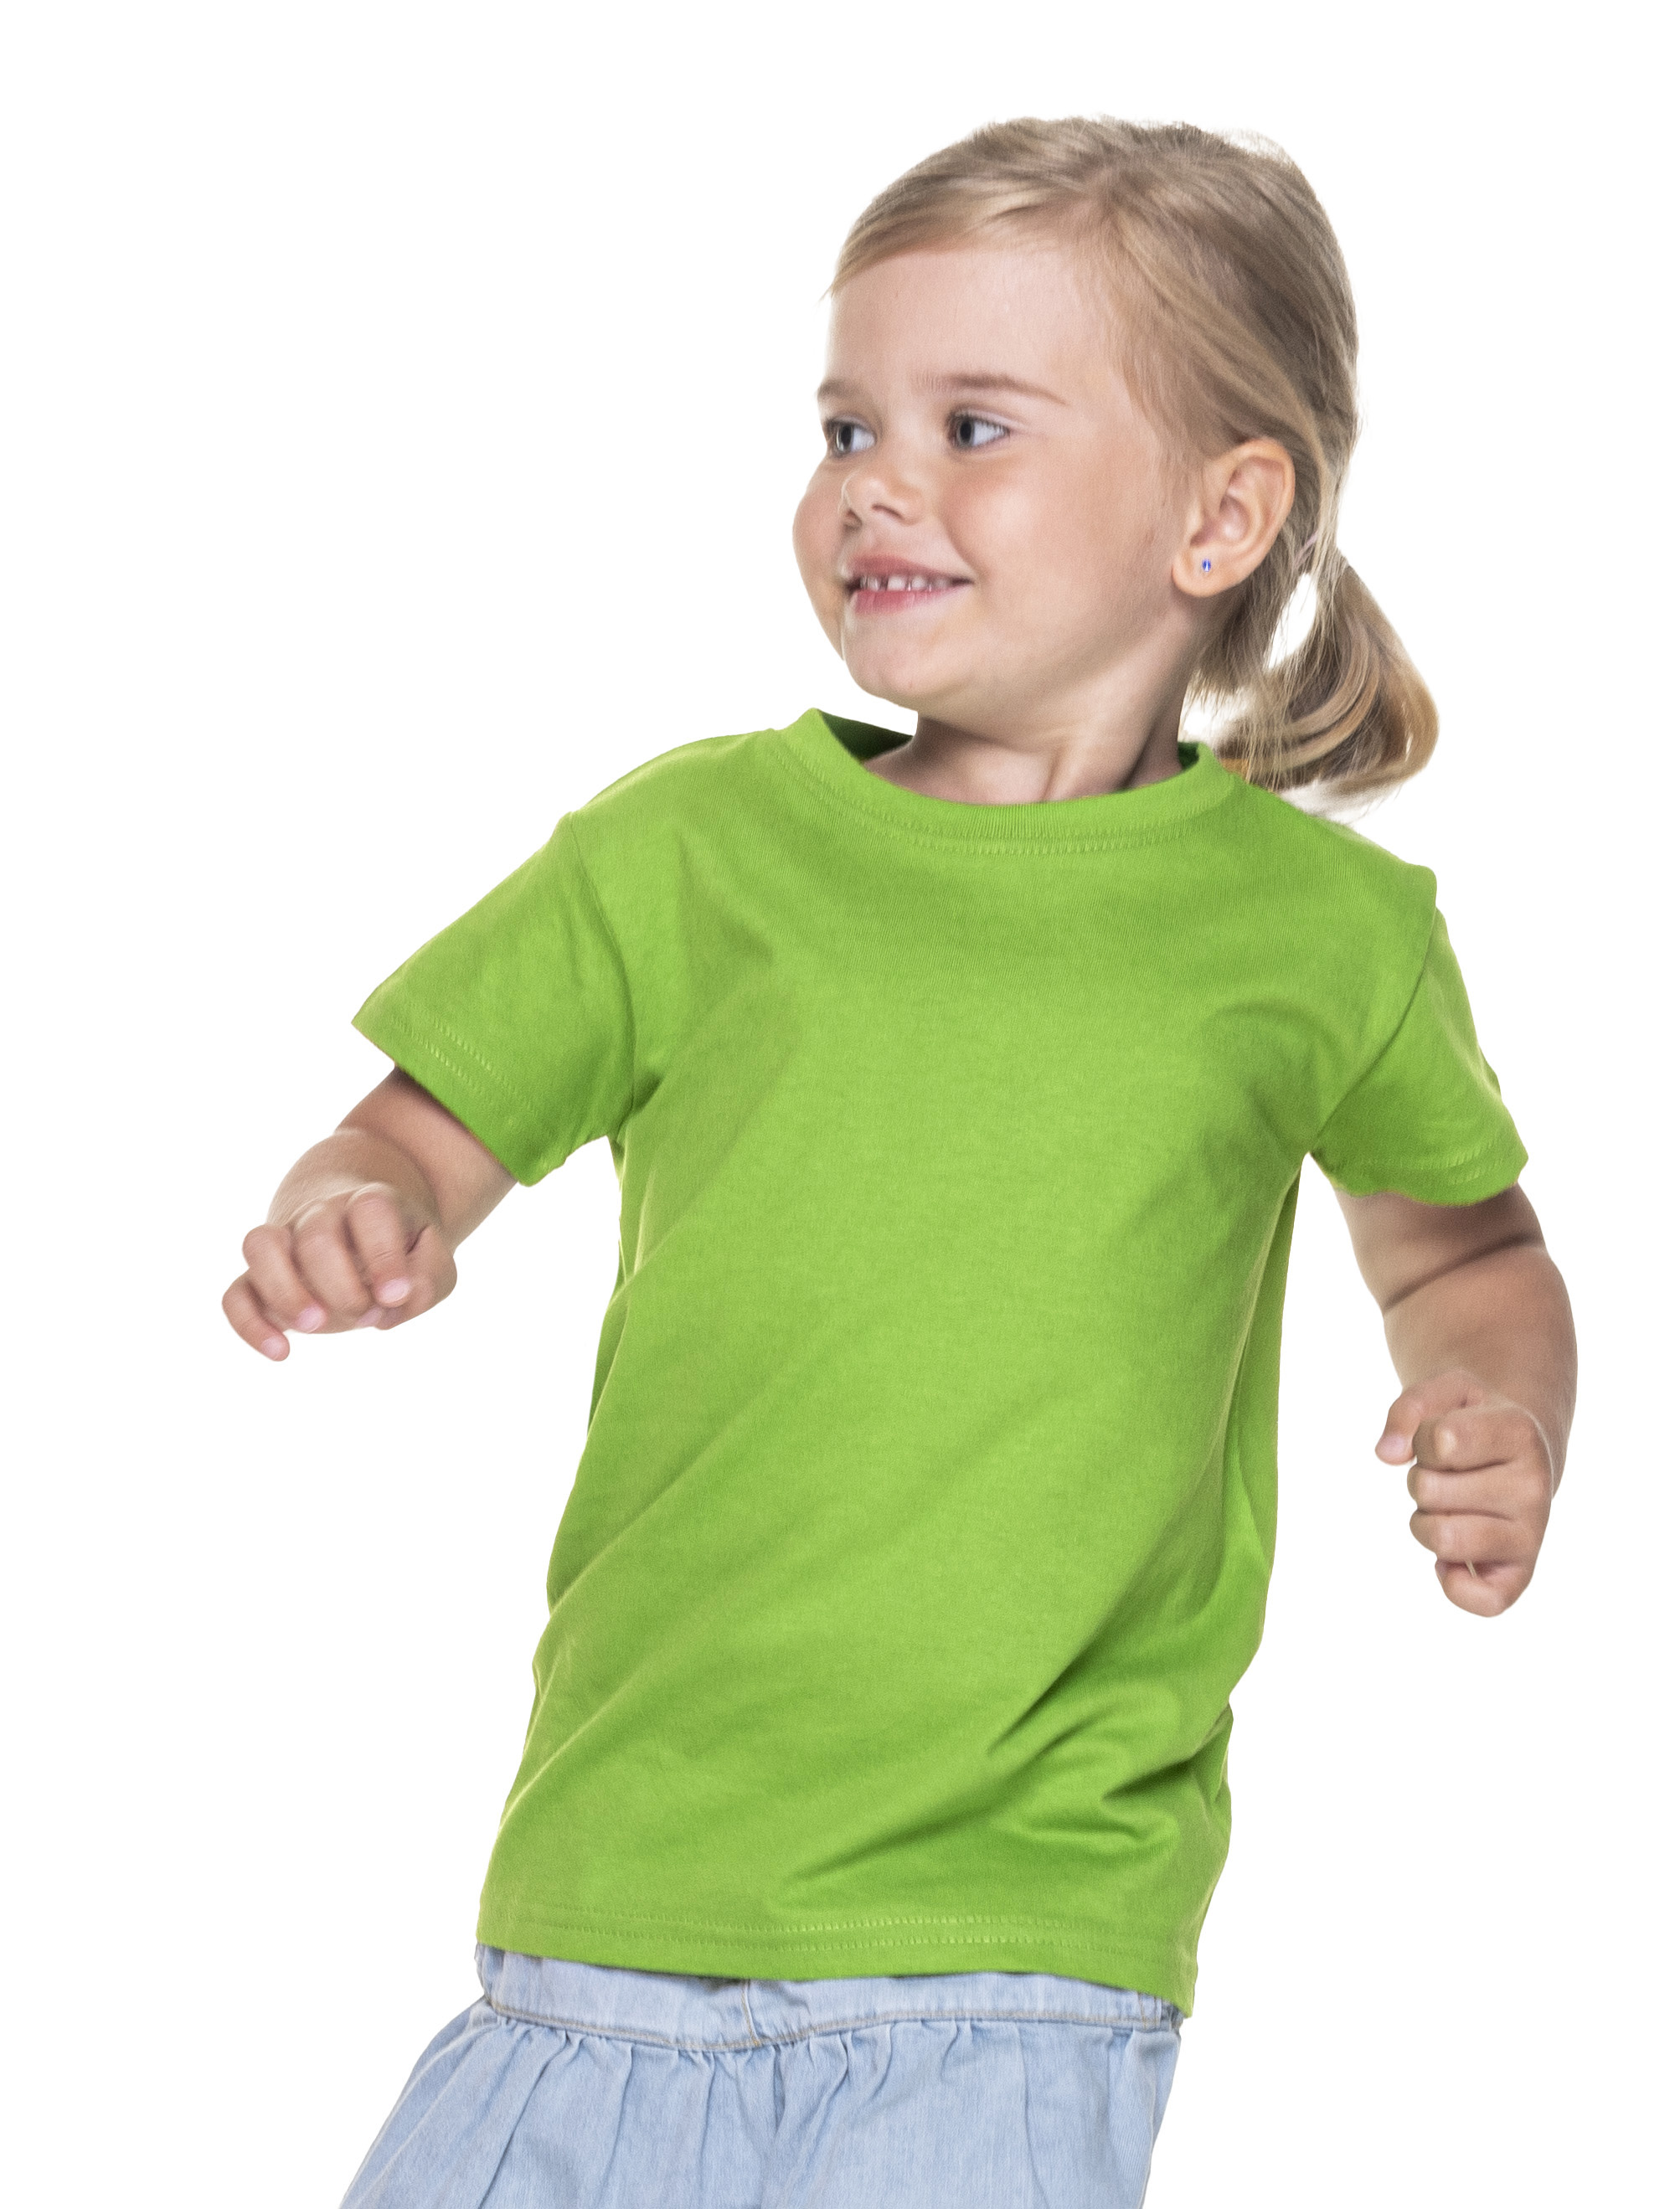 Koszulka Promostars Standard KID - jasno zielona